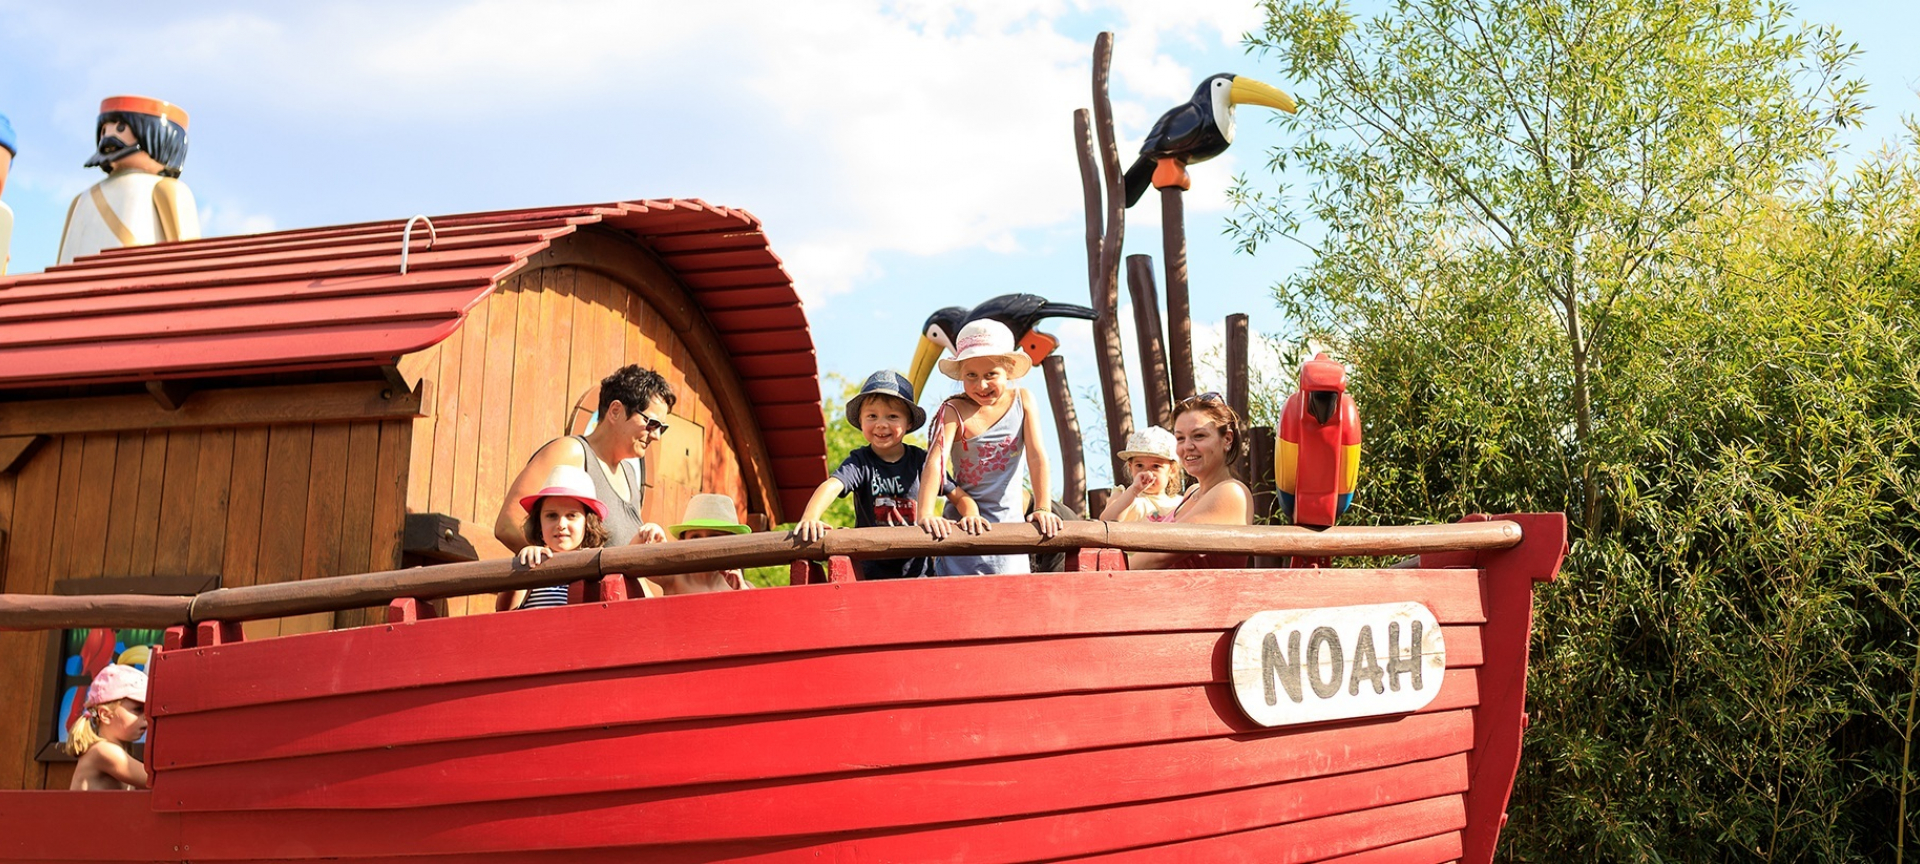 Verplicht Onzin communicatie Noah's Ark - Attractions - Playmobil FunPark